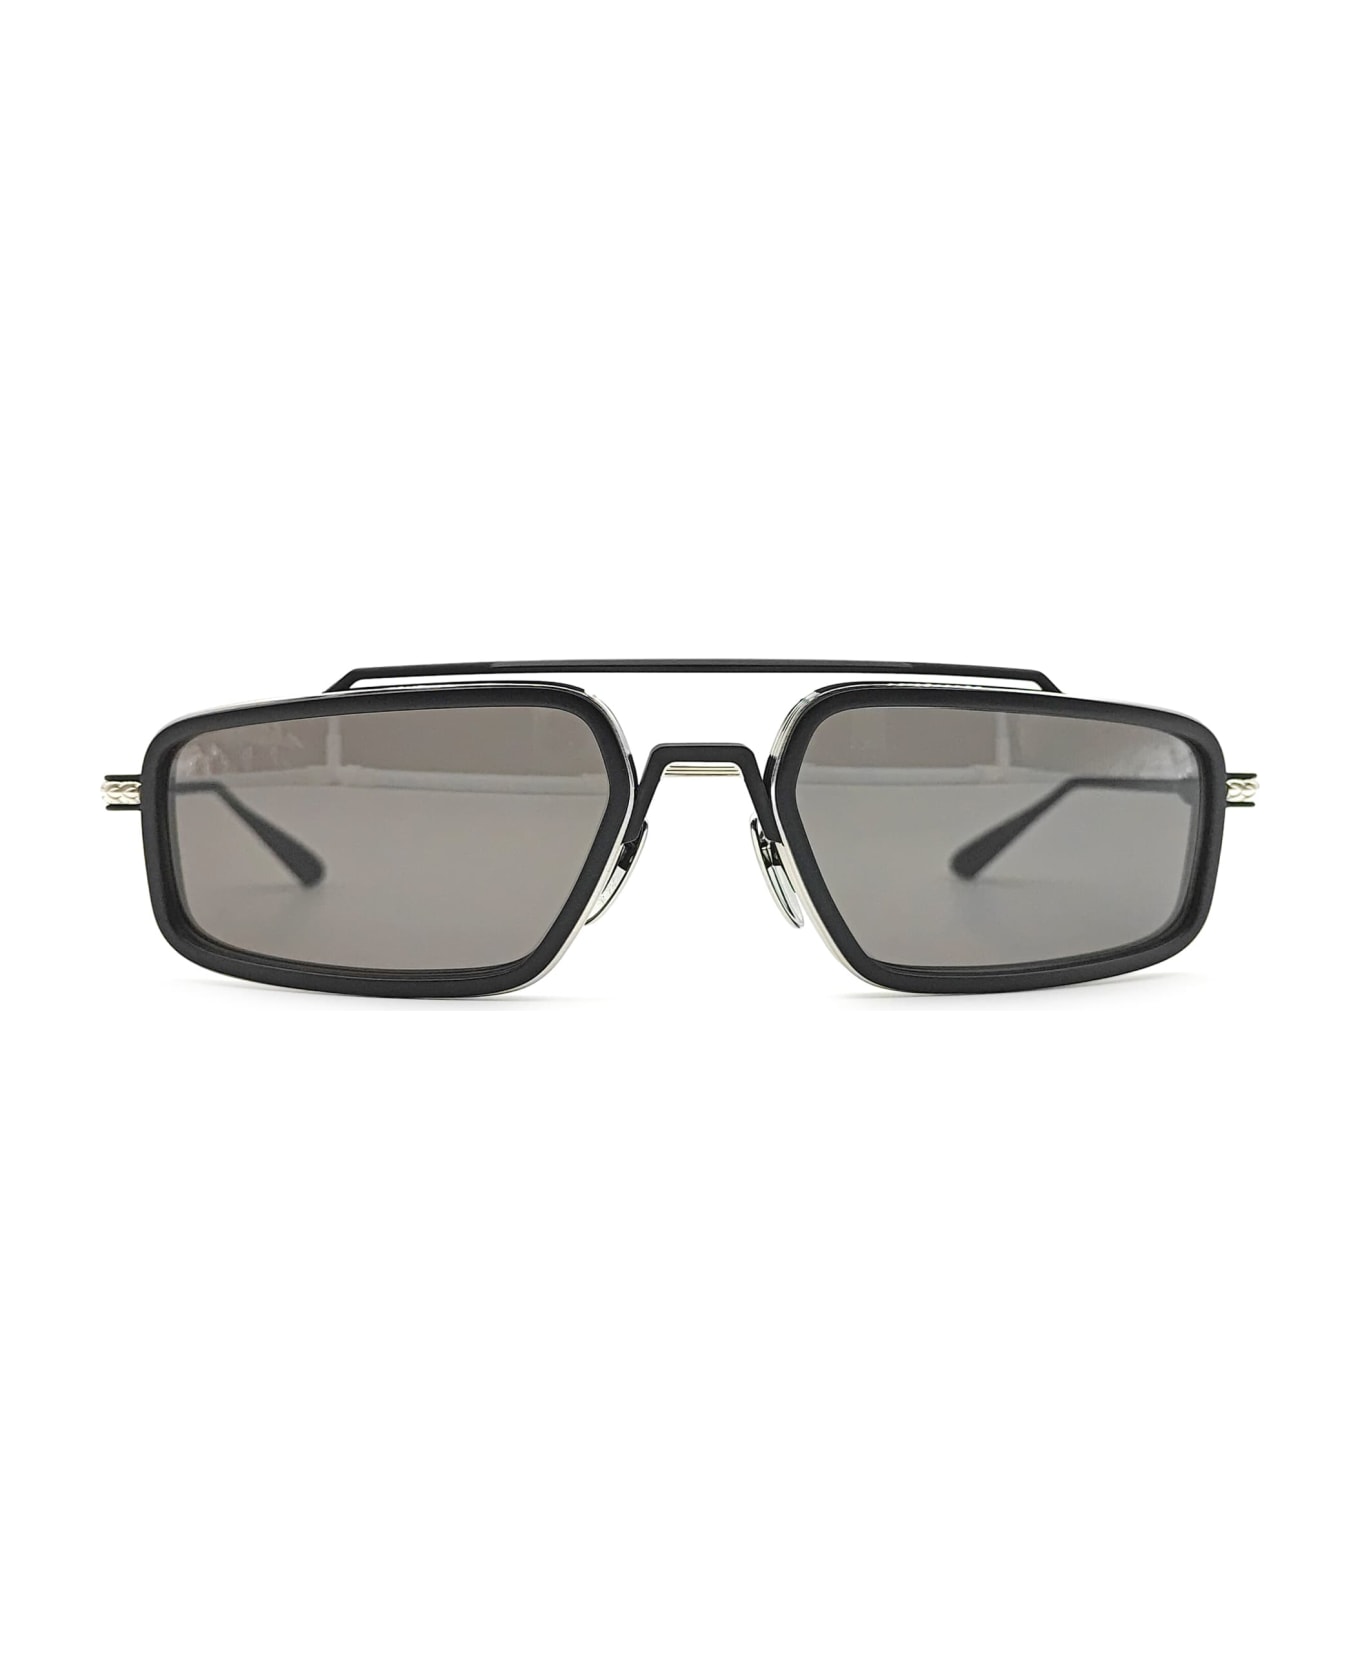 Chrome Hearts Eader - Brushed Silver / Matte Black Sunglasses - Matte black サングラス